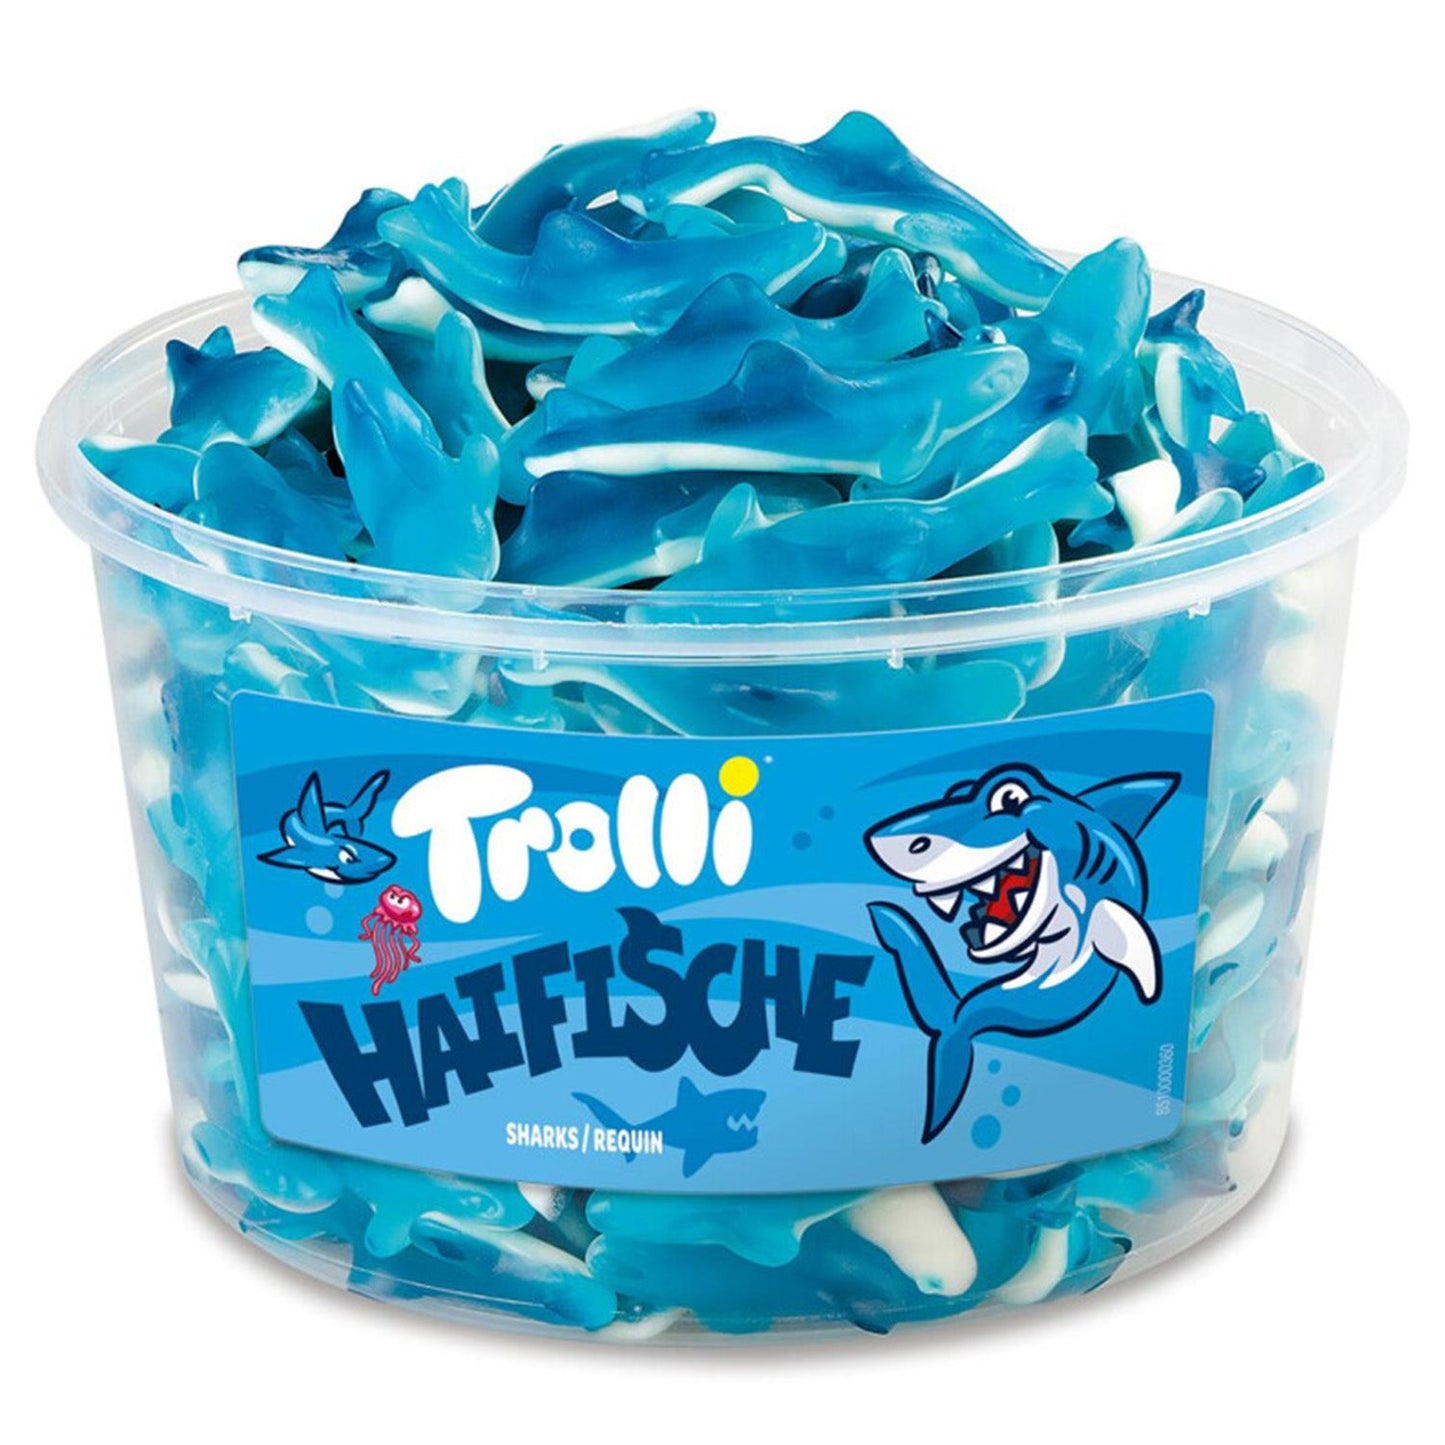 Trolli Blauwe Haaien (150 Stuks) - 1 Silo - van Trolli - Nu voor maar €8.99 bij Mijn Snoepgoed